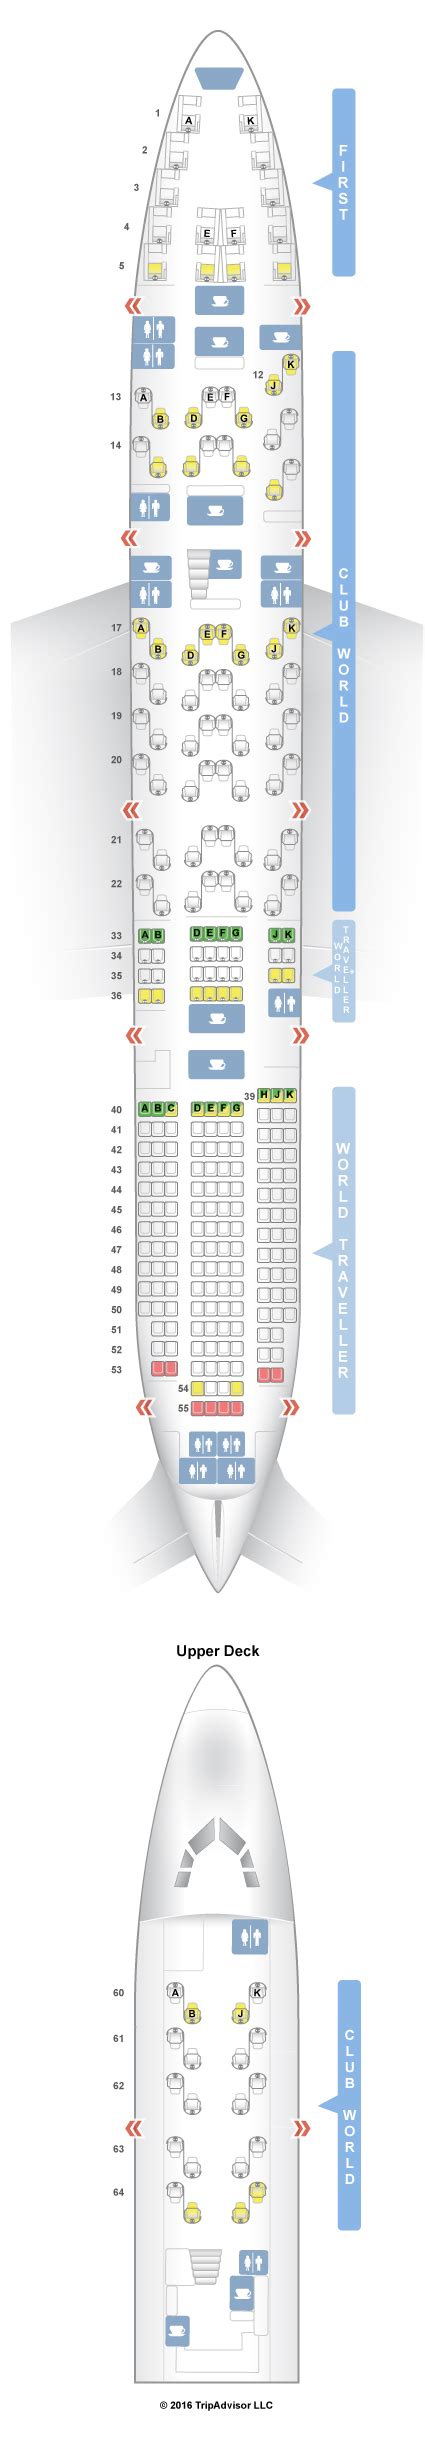 Seatguru Seat Map British Airways Boeing 747 400 744 V3